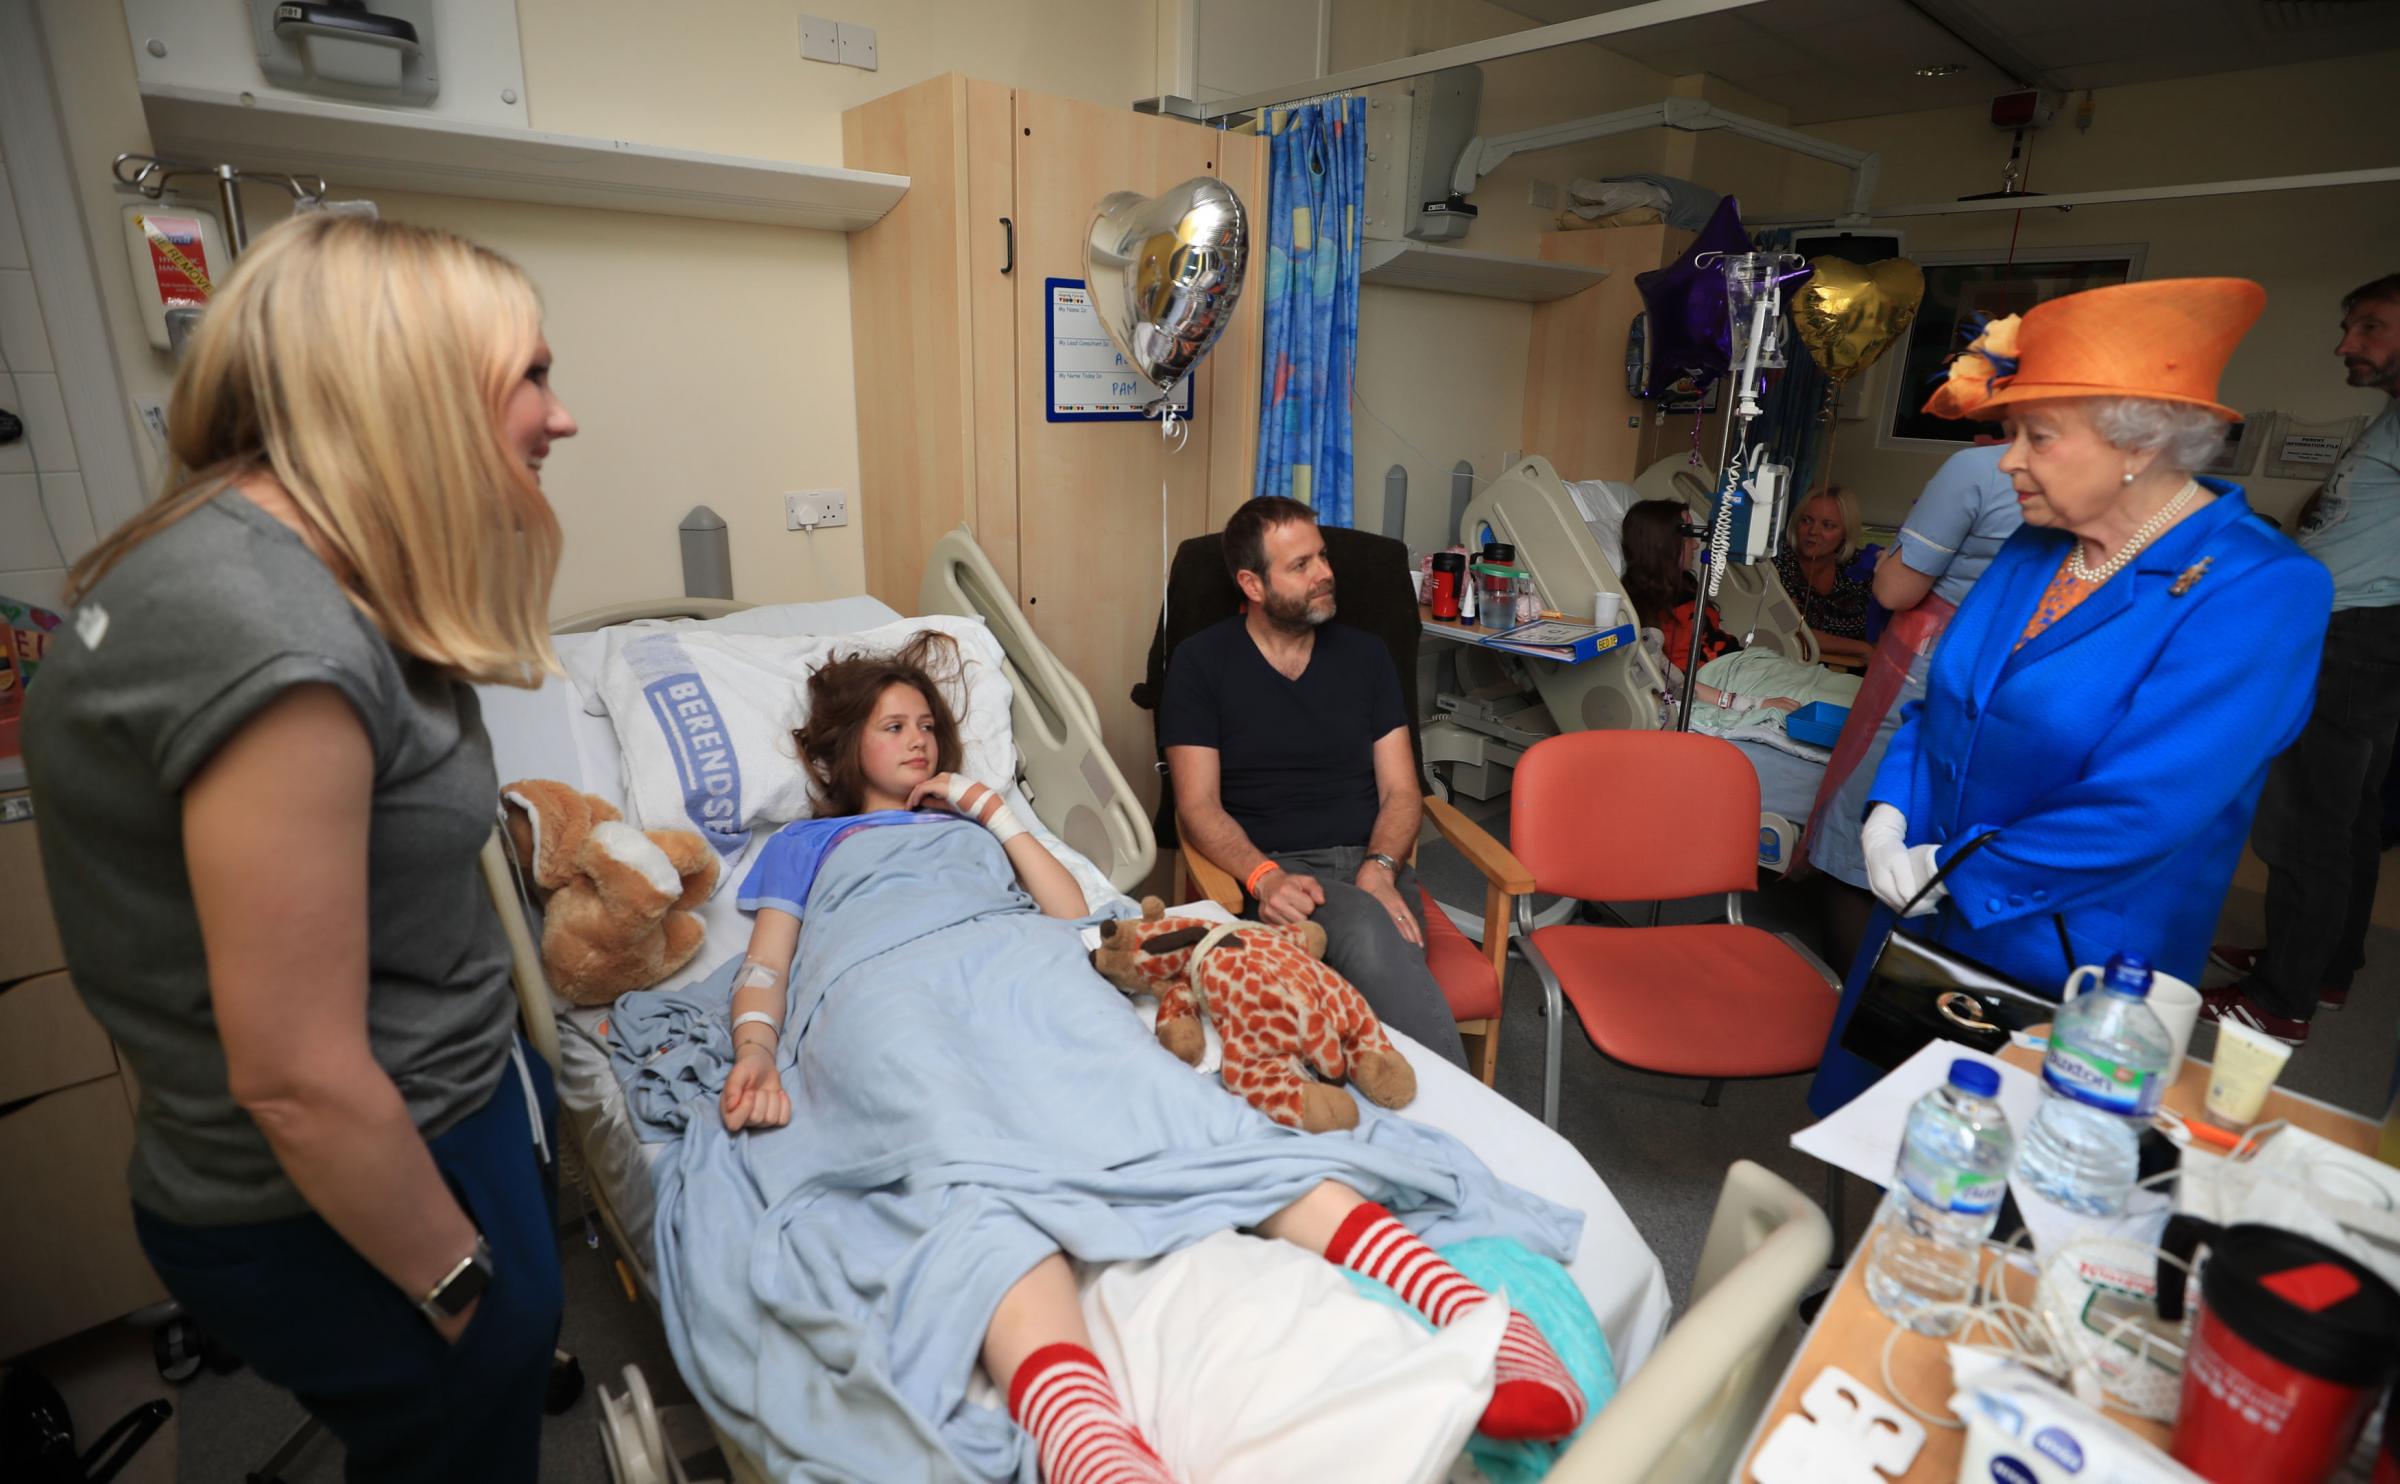 Queen meets Harrogate blast victim in hospital